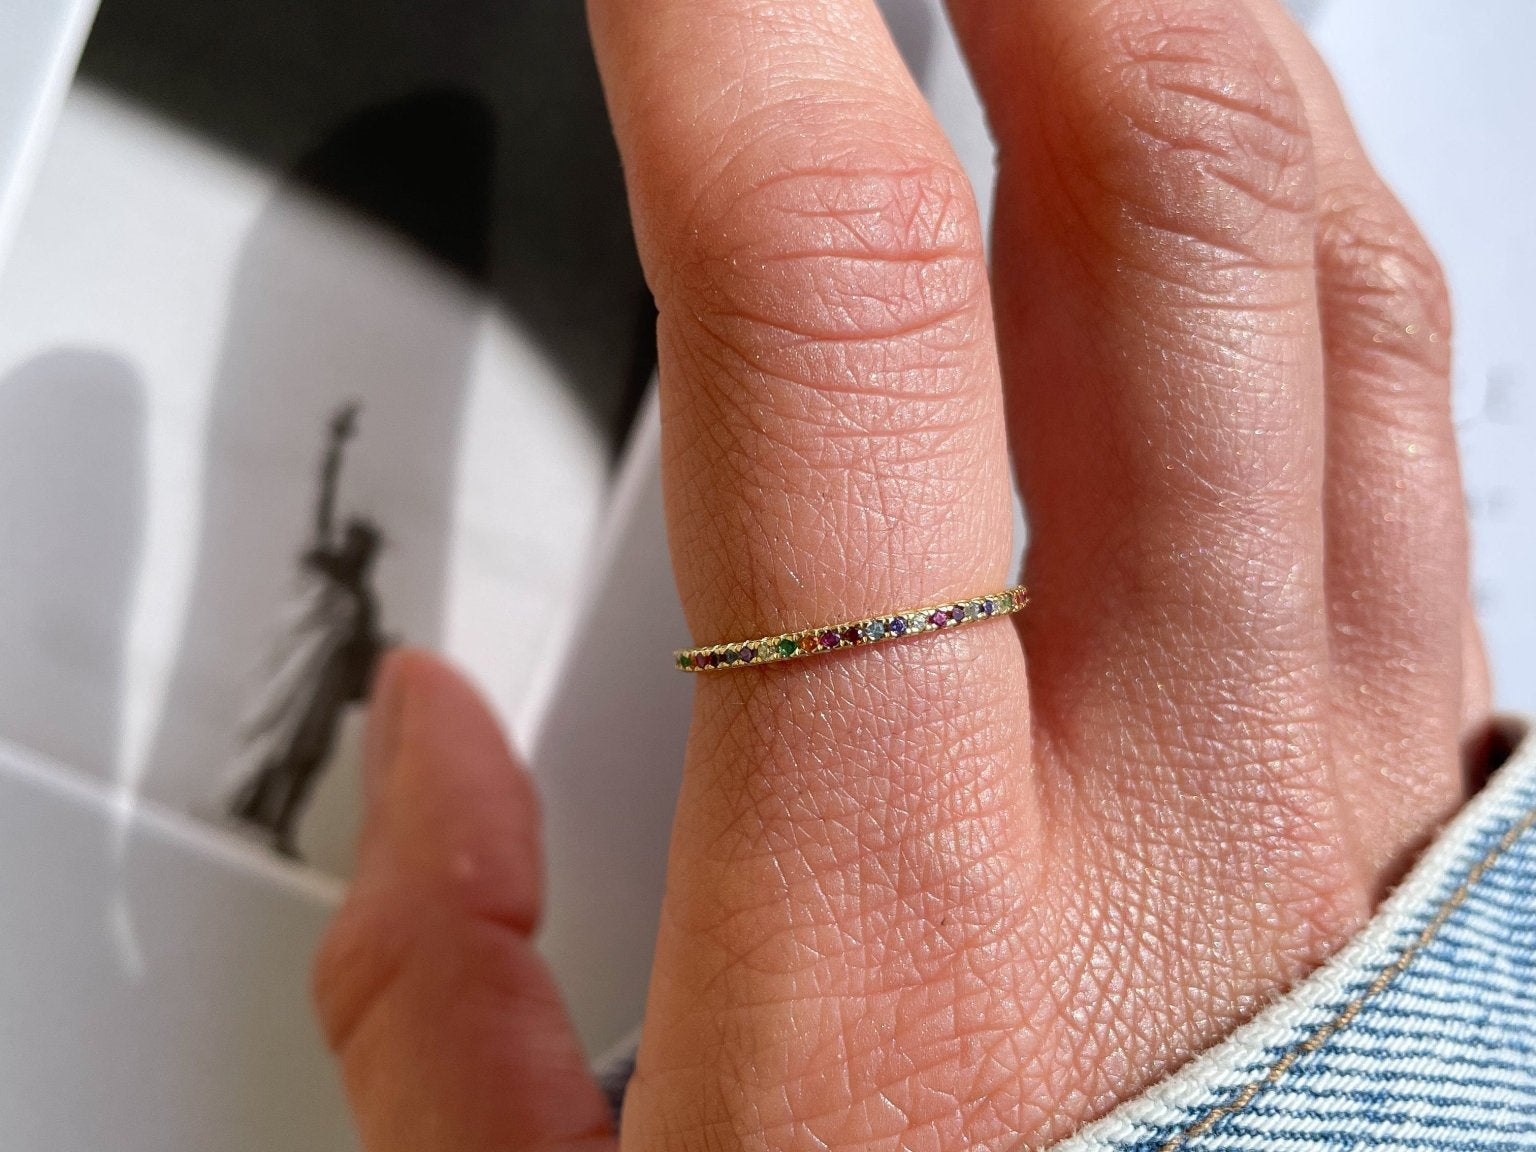 Noelle Rainbow Zirconia Gold Ring by Koréil Jewelry